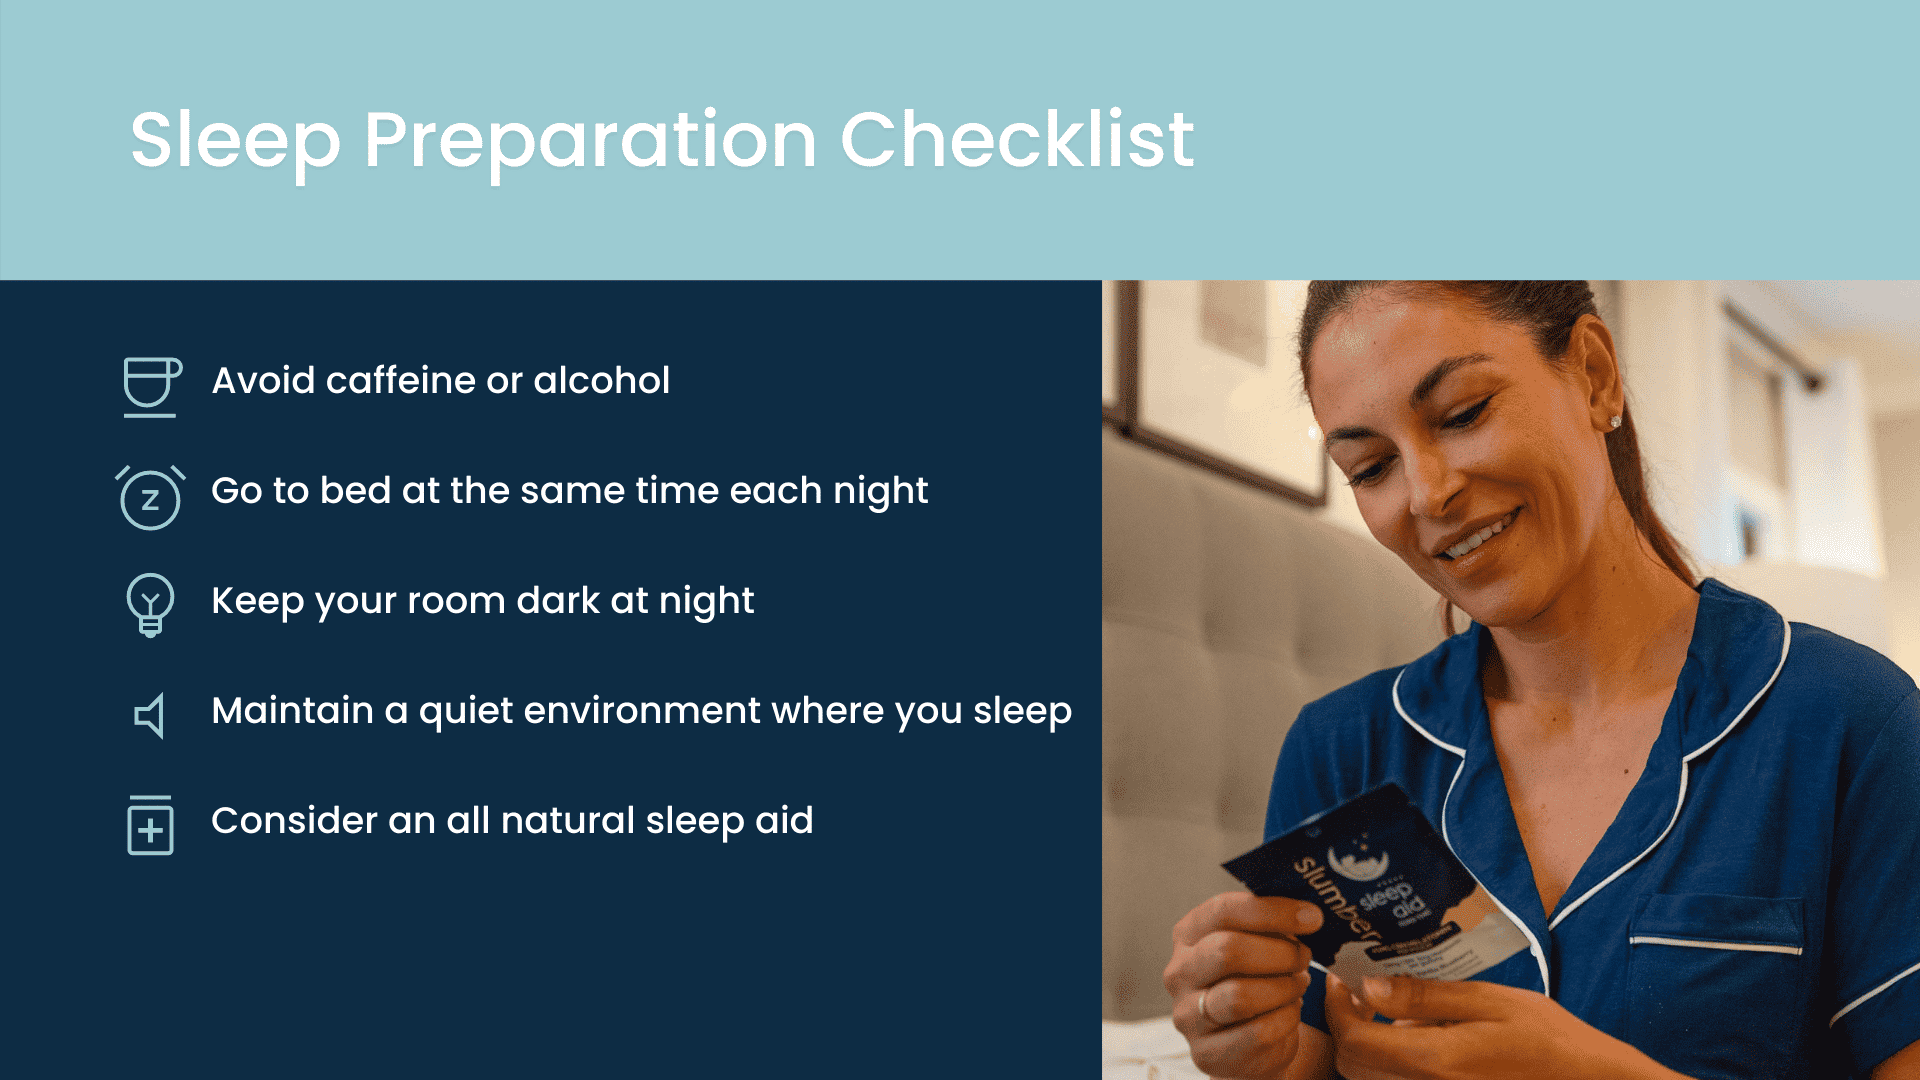 Sleep preparation checklist.